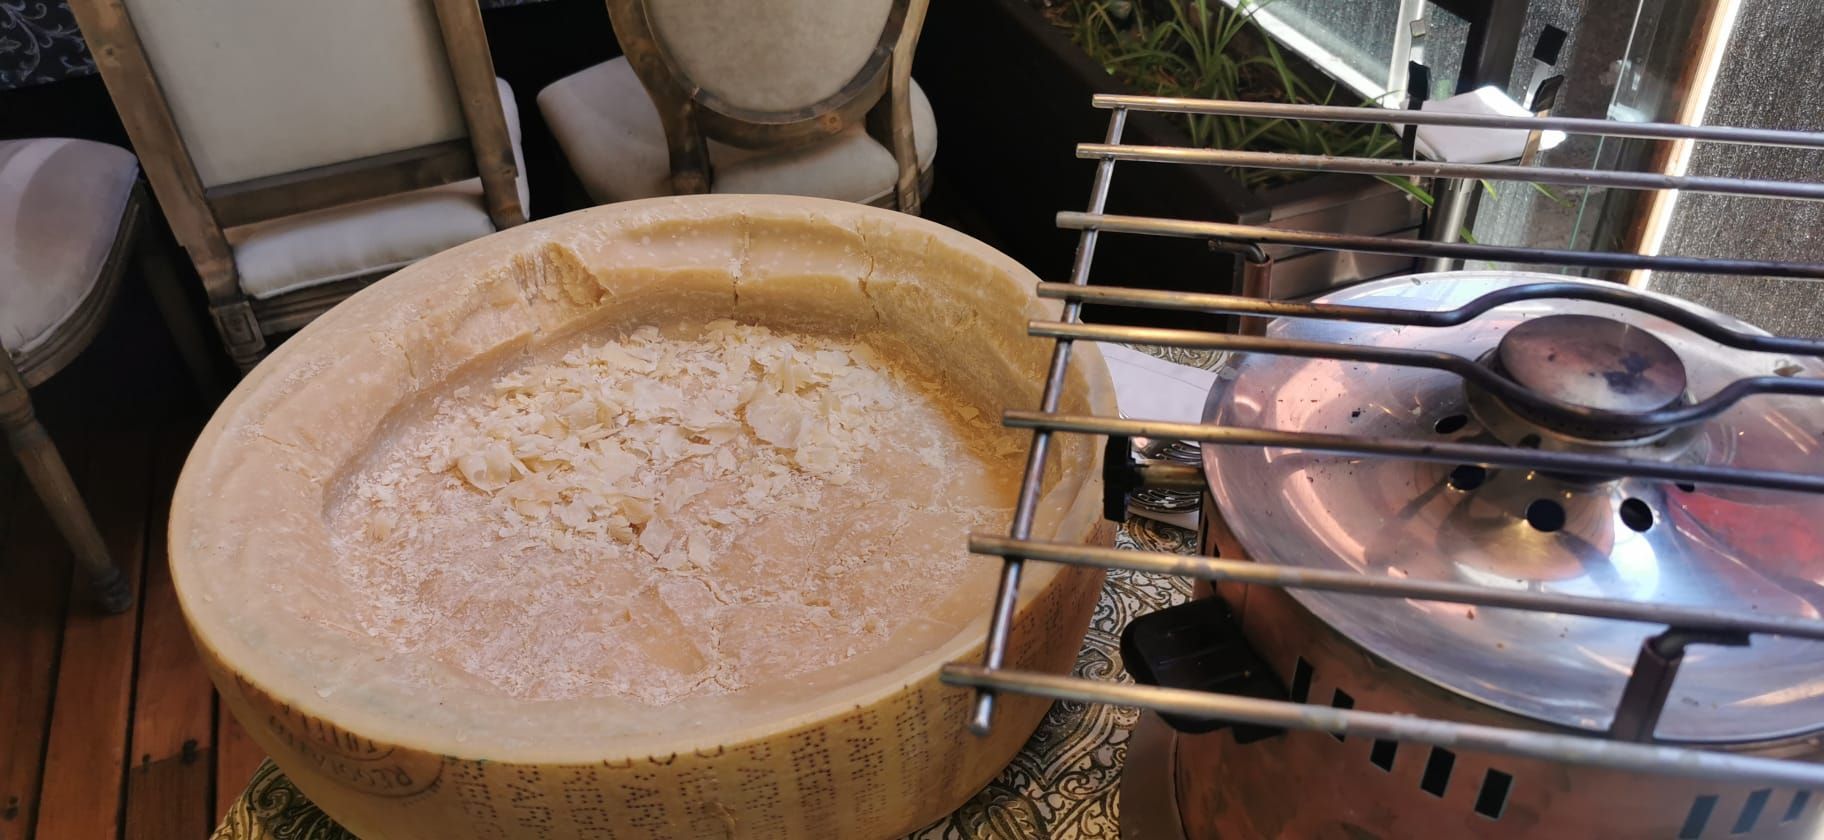 cómo se hace el famoso 'Tagliatelle al Parmesano' de la rueda de queso del restaurante El Foro